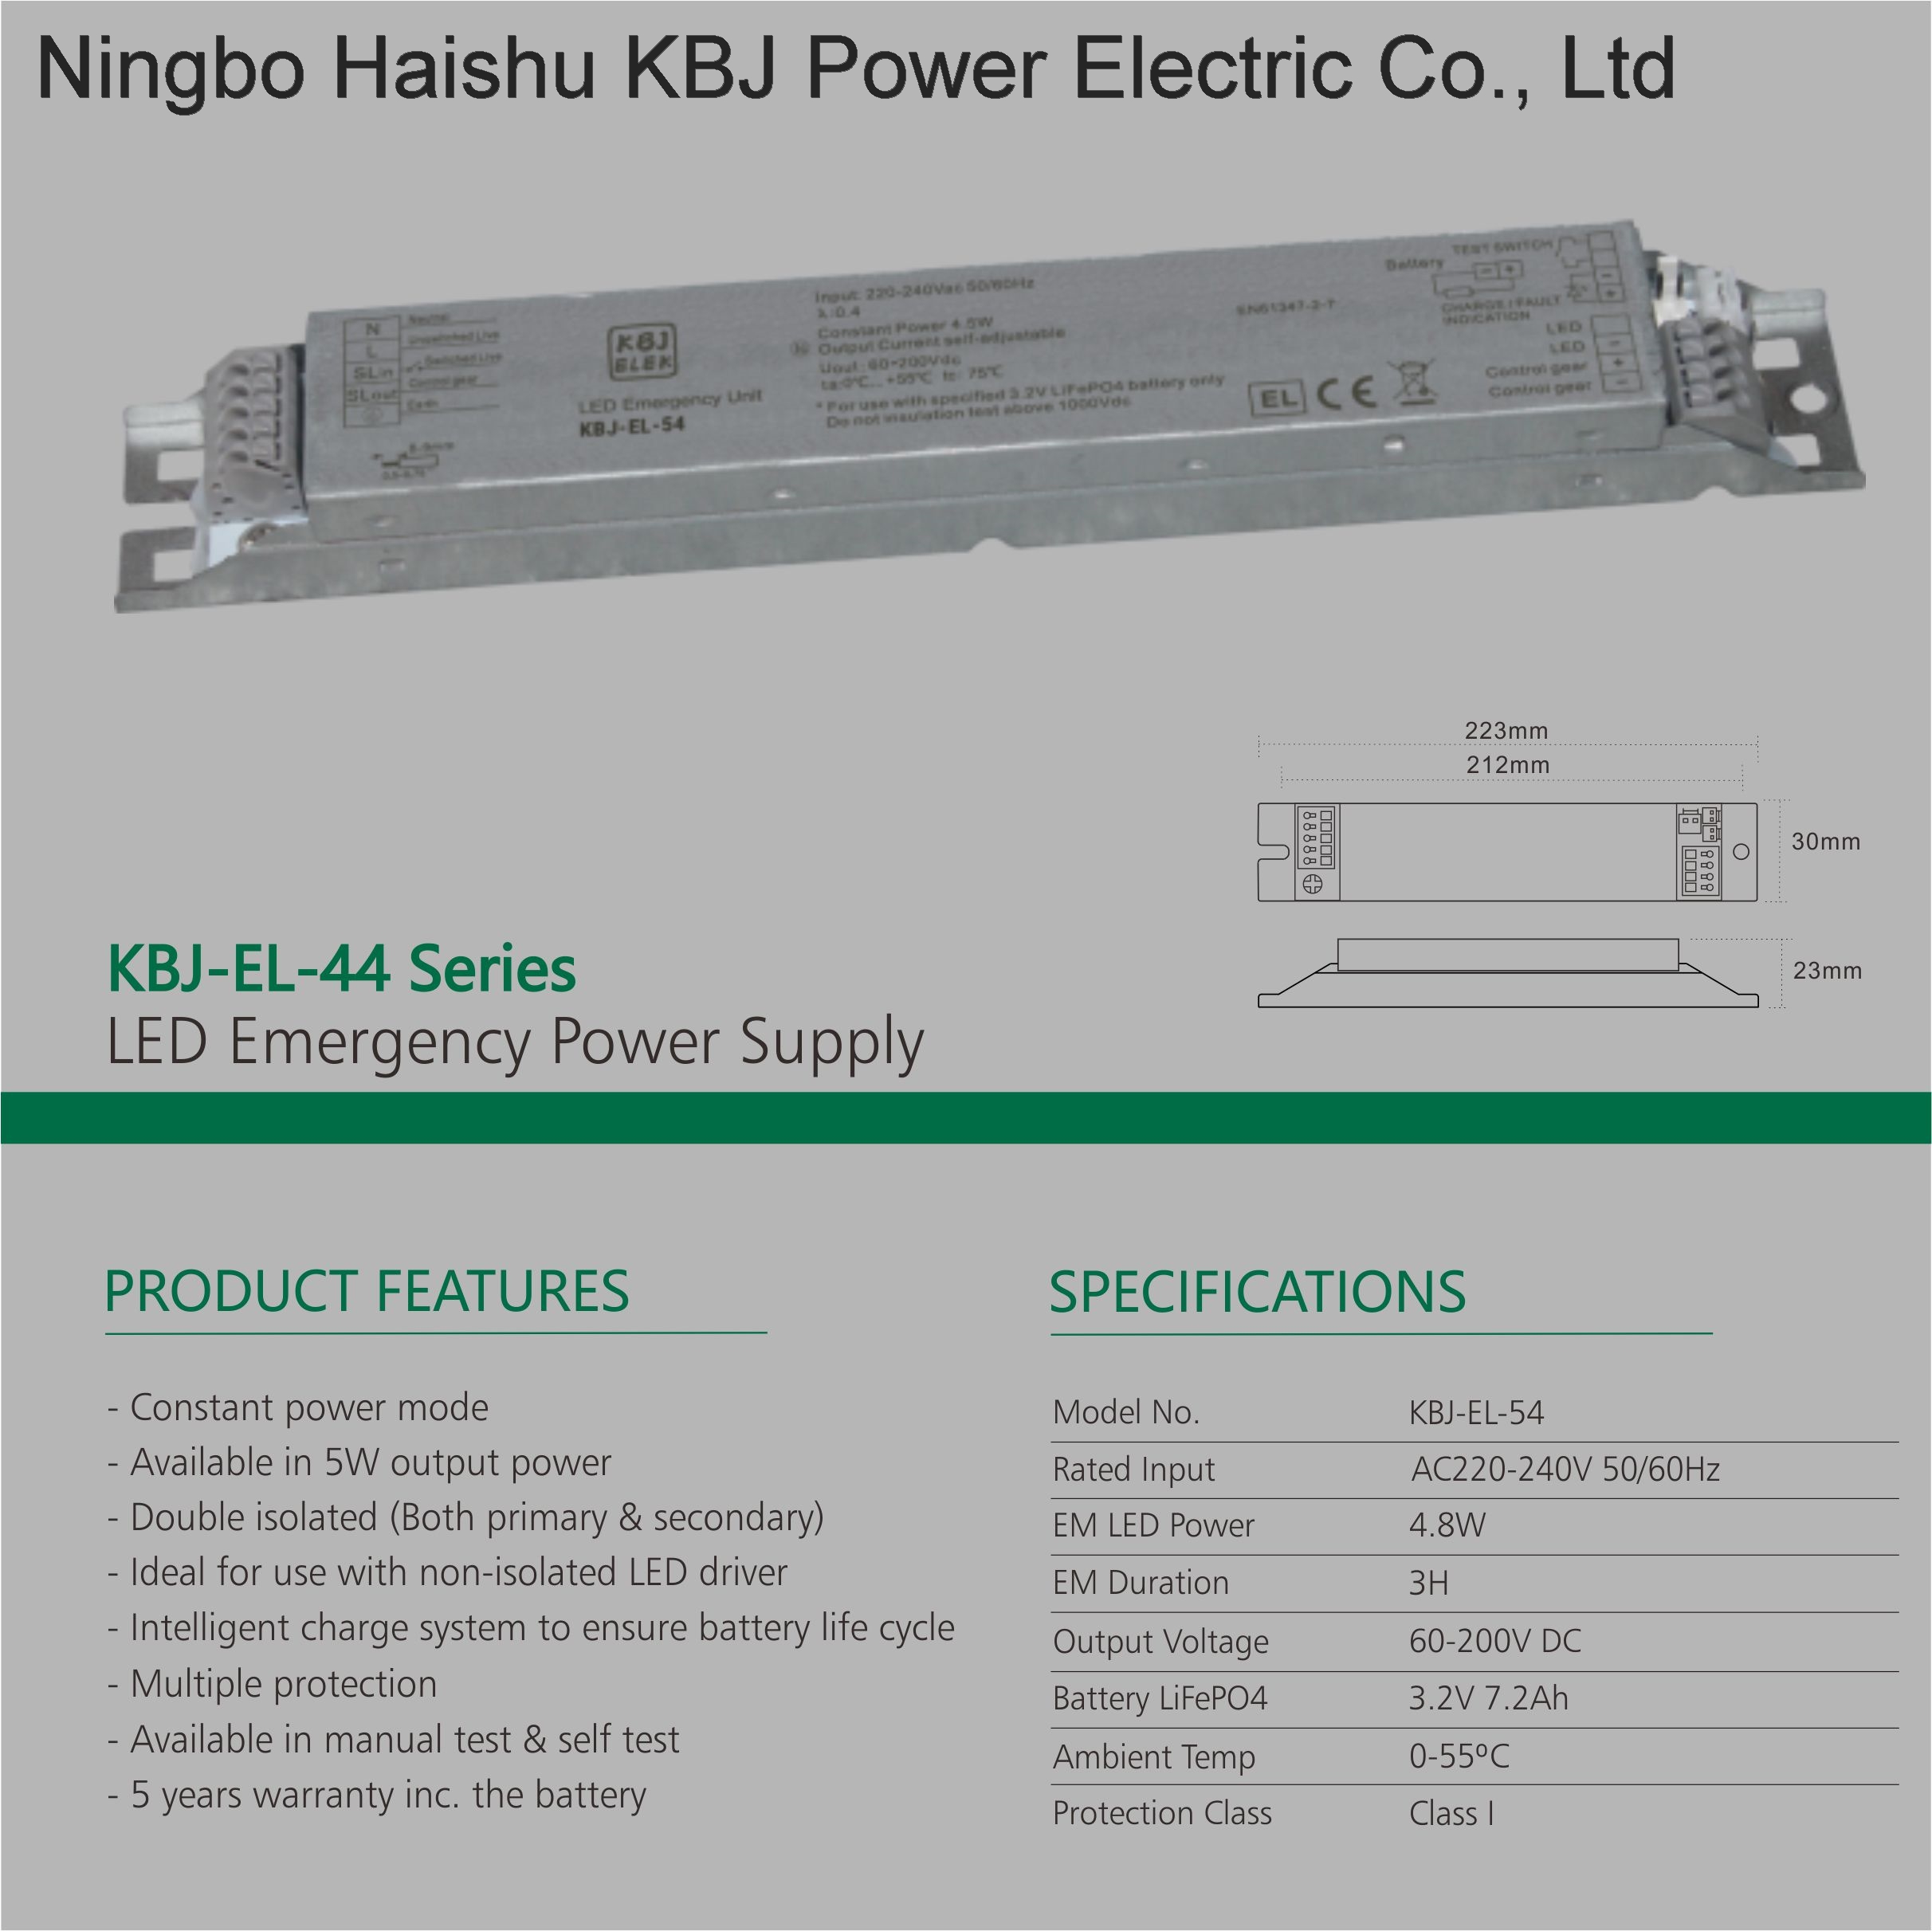 KBJ-EL-54 Double isolated Emergency LED Power Supply